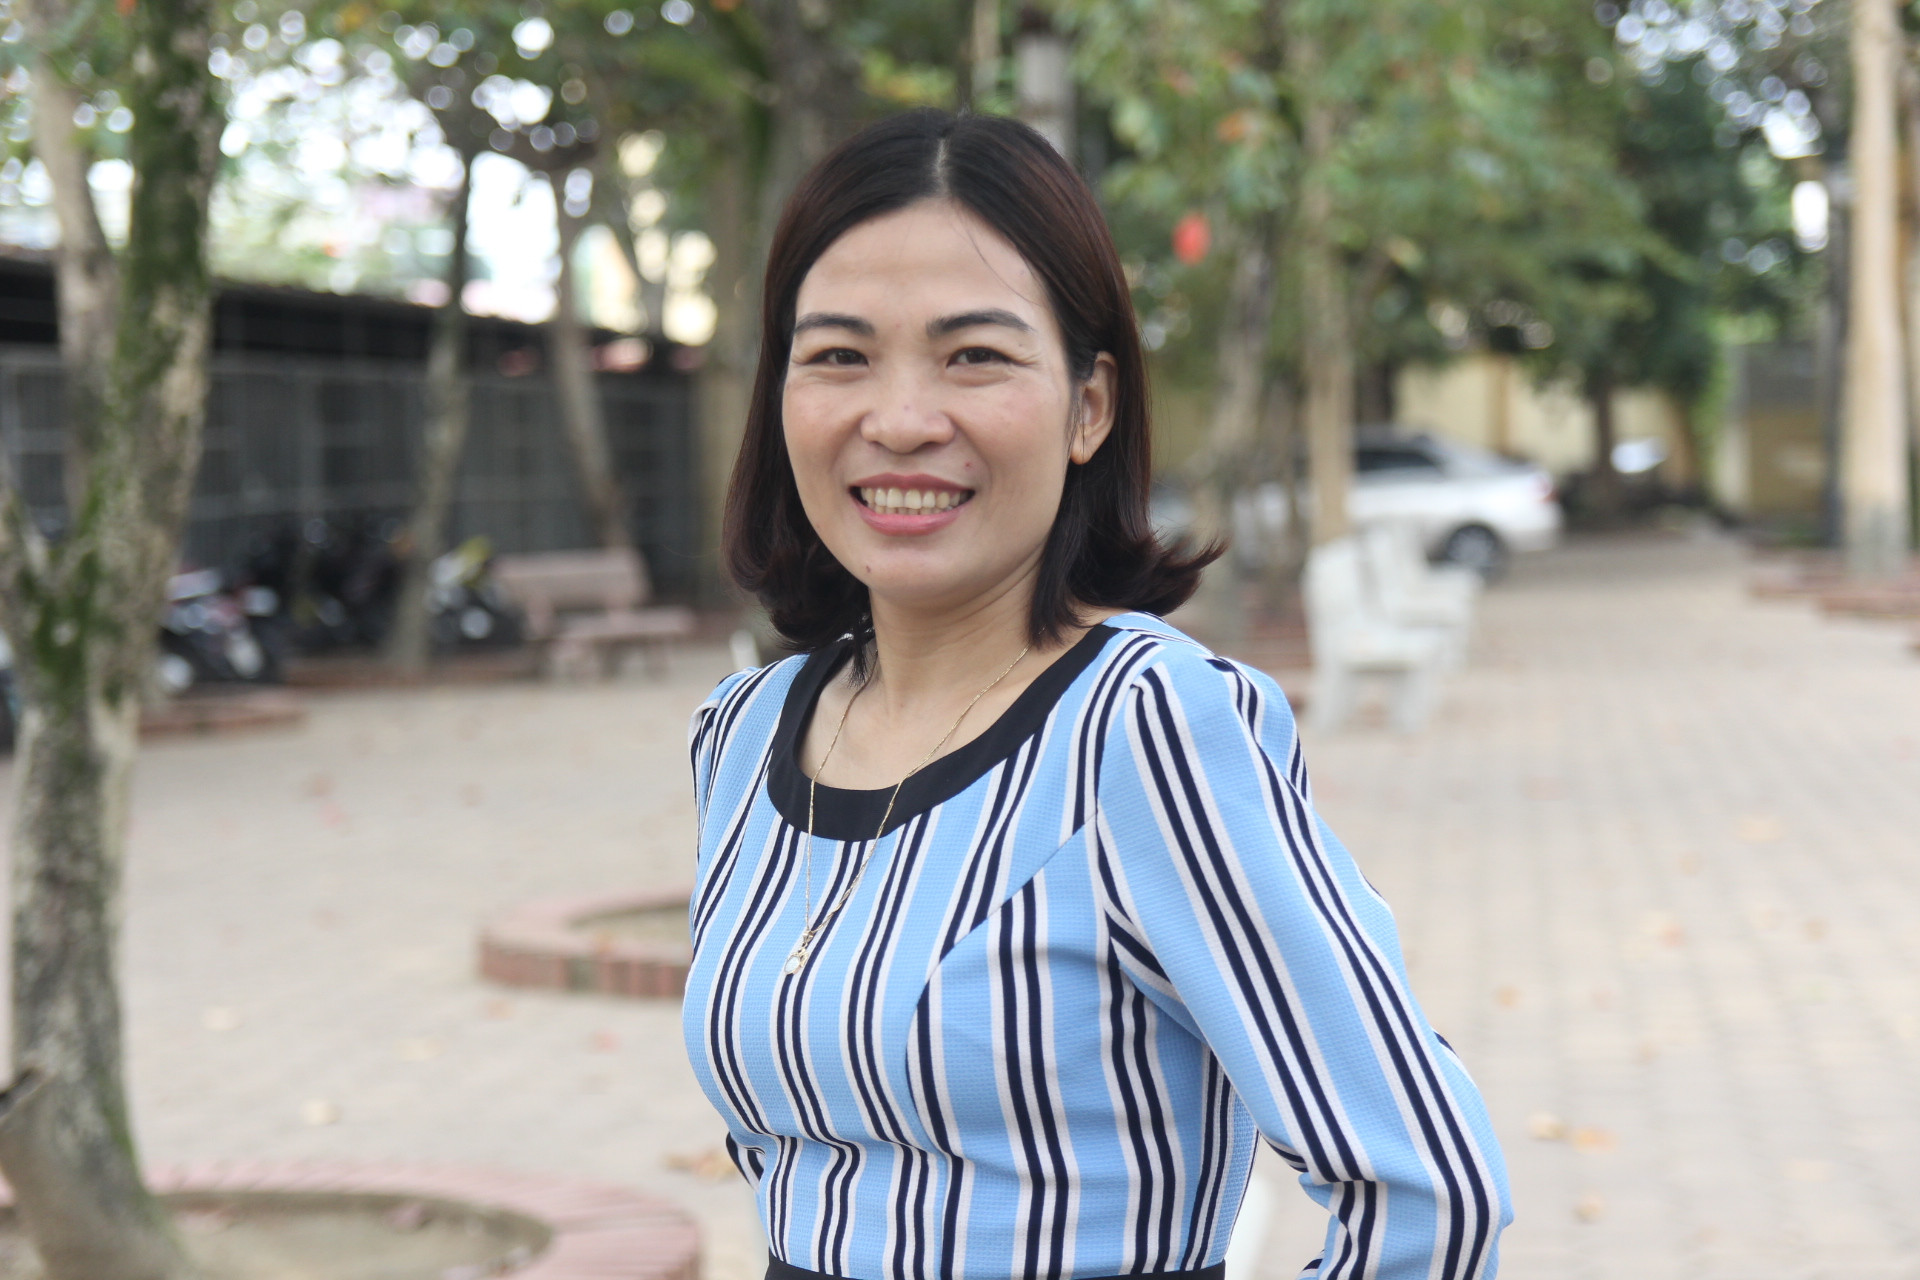 Năm 2018, gần 20 năm cô giáo Lê Thị Lan gắn bó với Trường THPT chuyên Phan Bội Châu. Ảnh: Song Hoàng